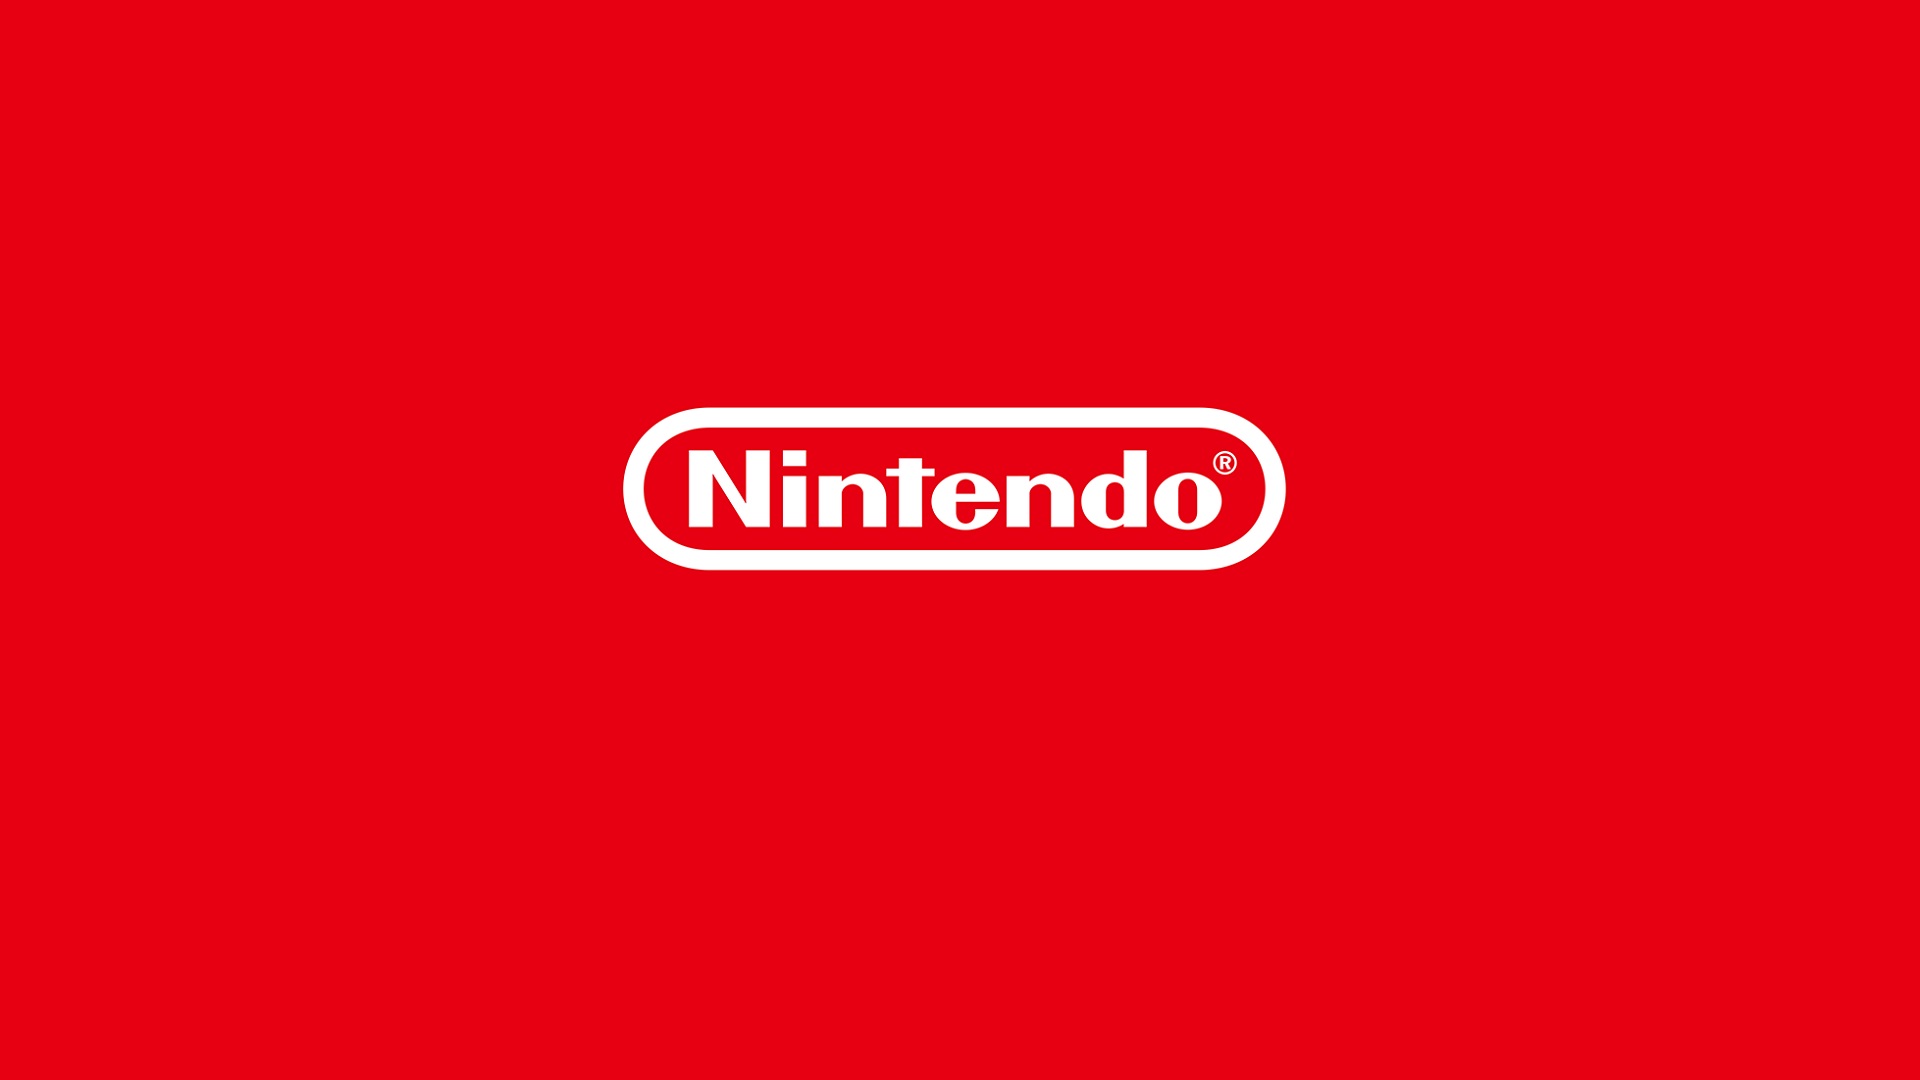 Nintendo stämmer en annan ROM-webbplats för "insolent" intrång i upphovsrätten